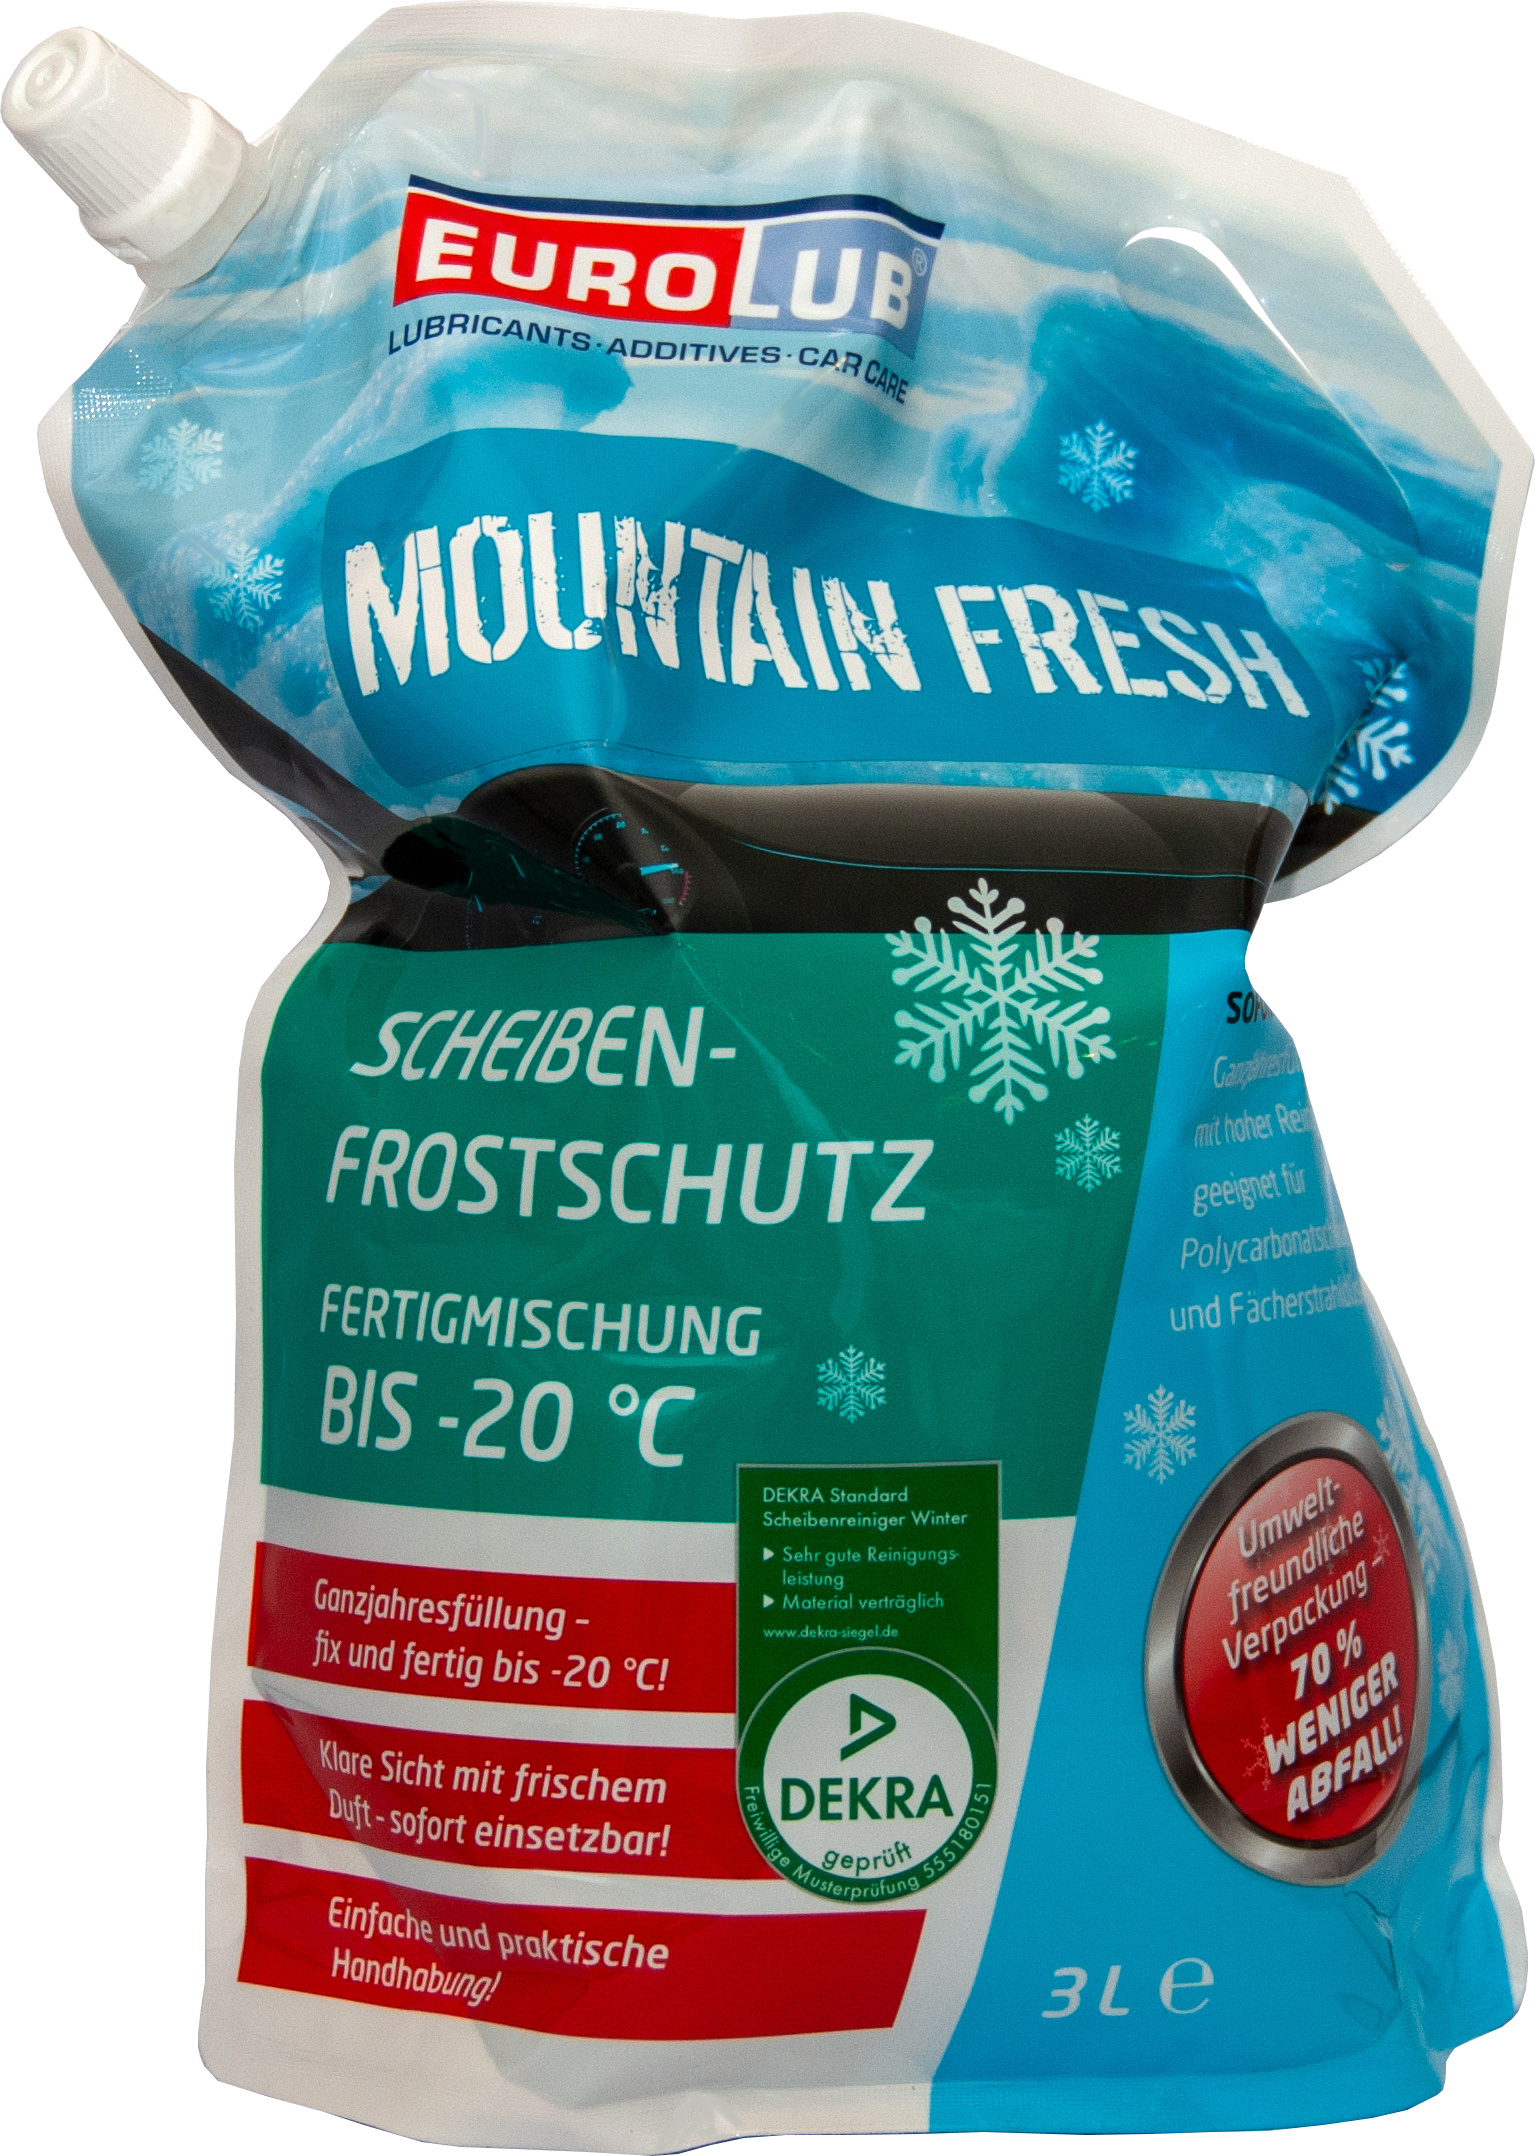 25 Liter EUROLUB Frostschutz Scheibenfrostschutz KLARE SICHT